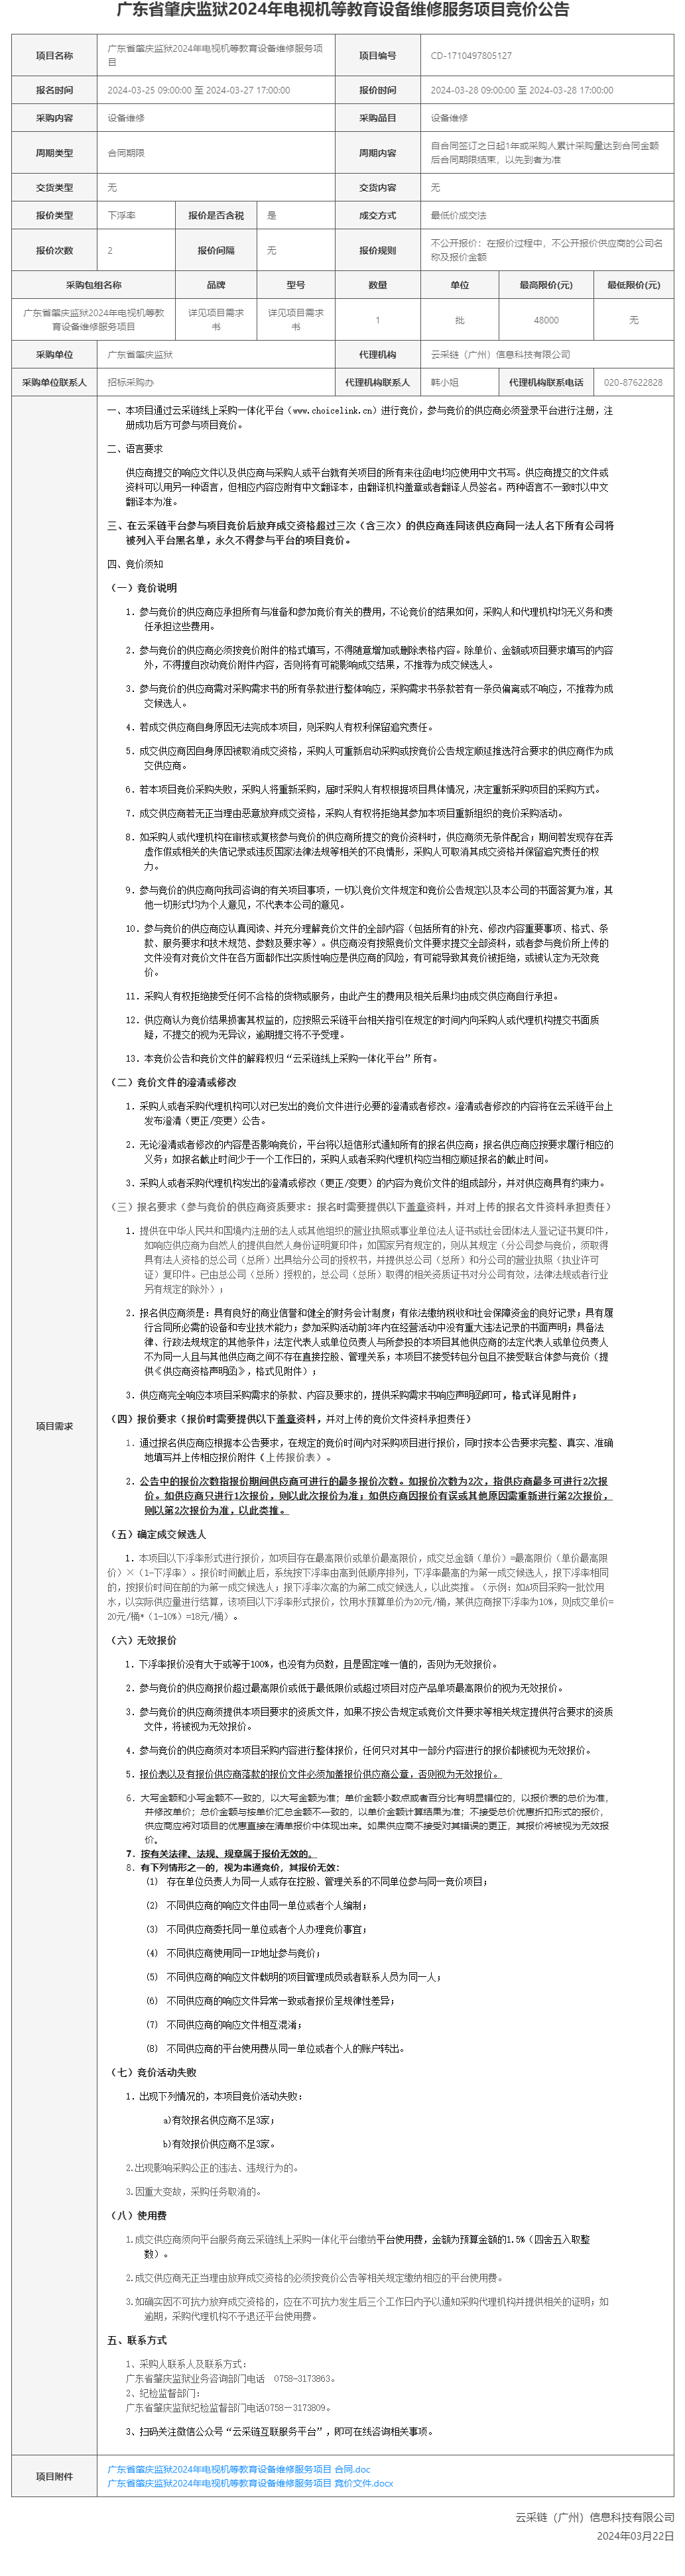 广东省肇庆监狱2024年电视机等教育设备维修服务项目竞价公告.png